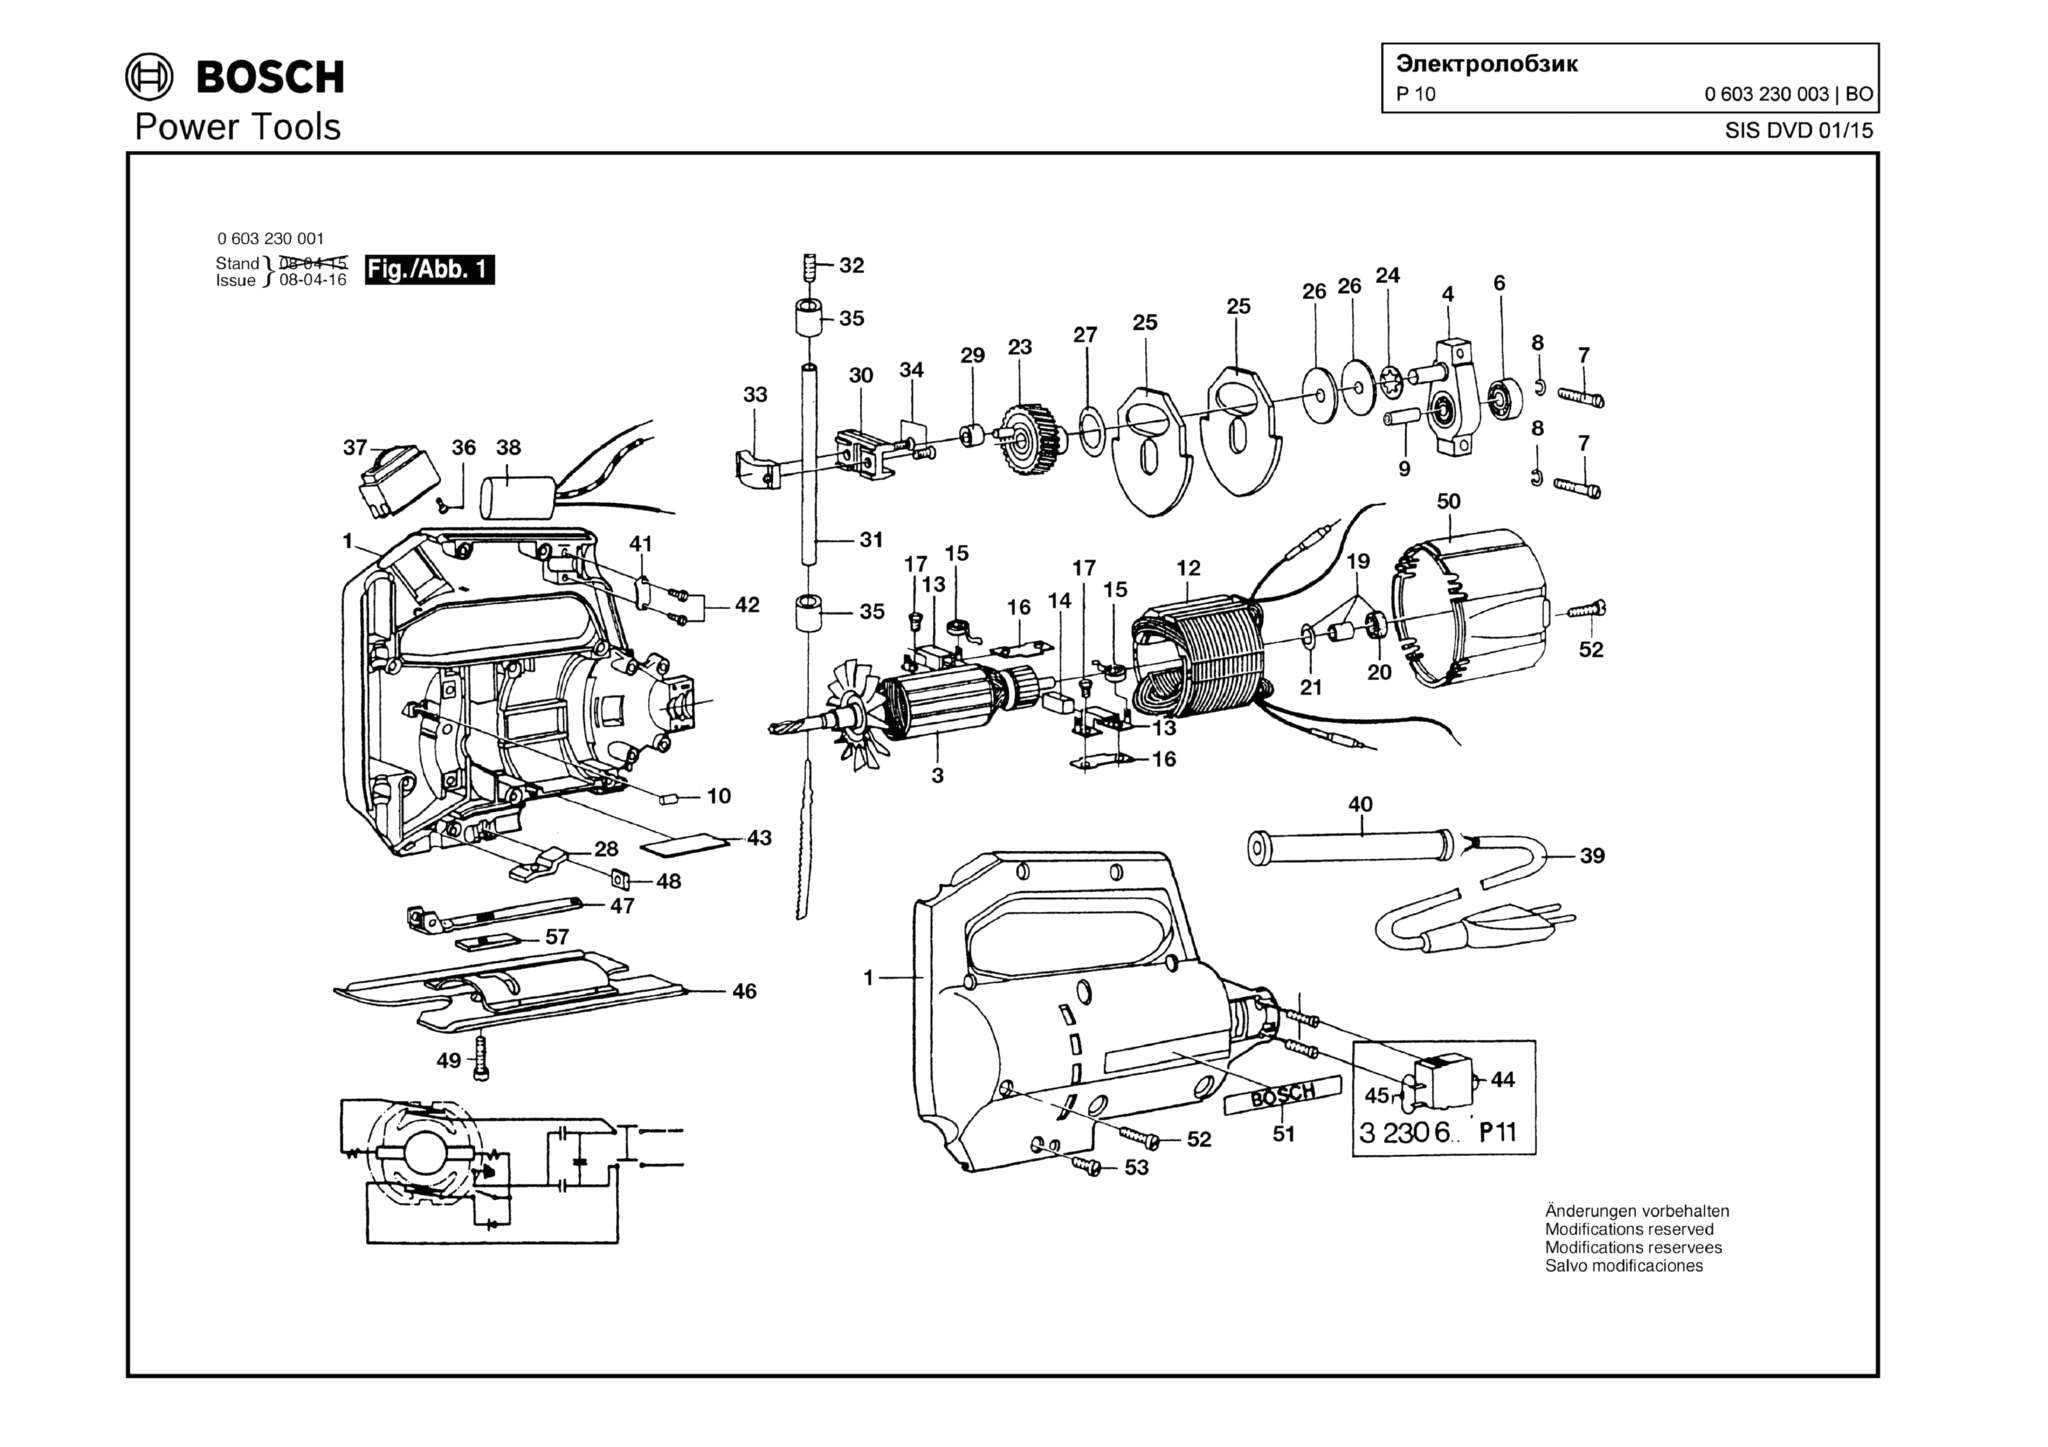 Запчасти, схема и деталировка Bosch P 10 (ТИП 0603230003)